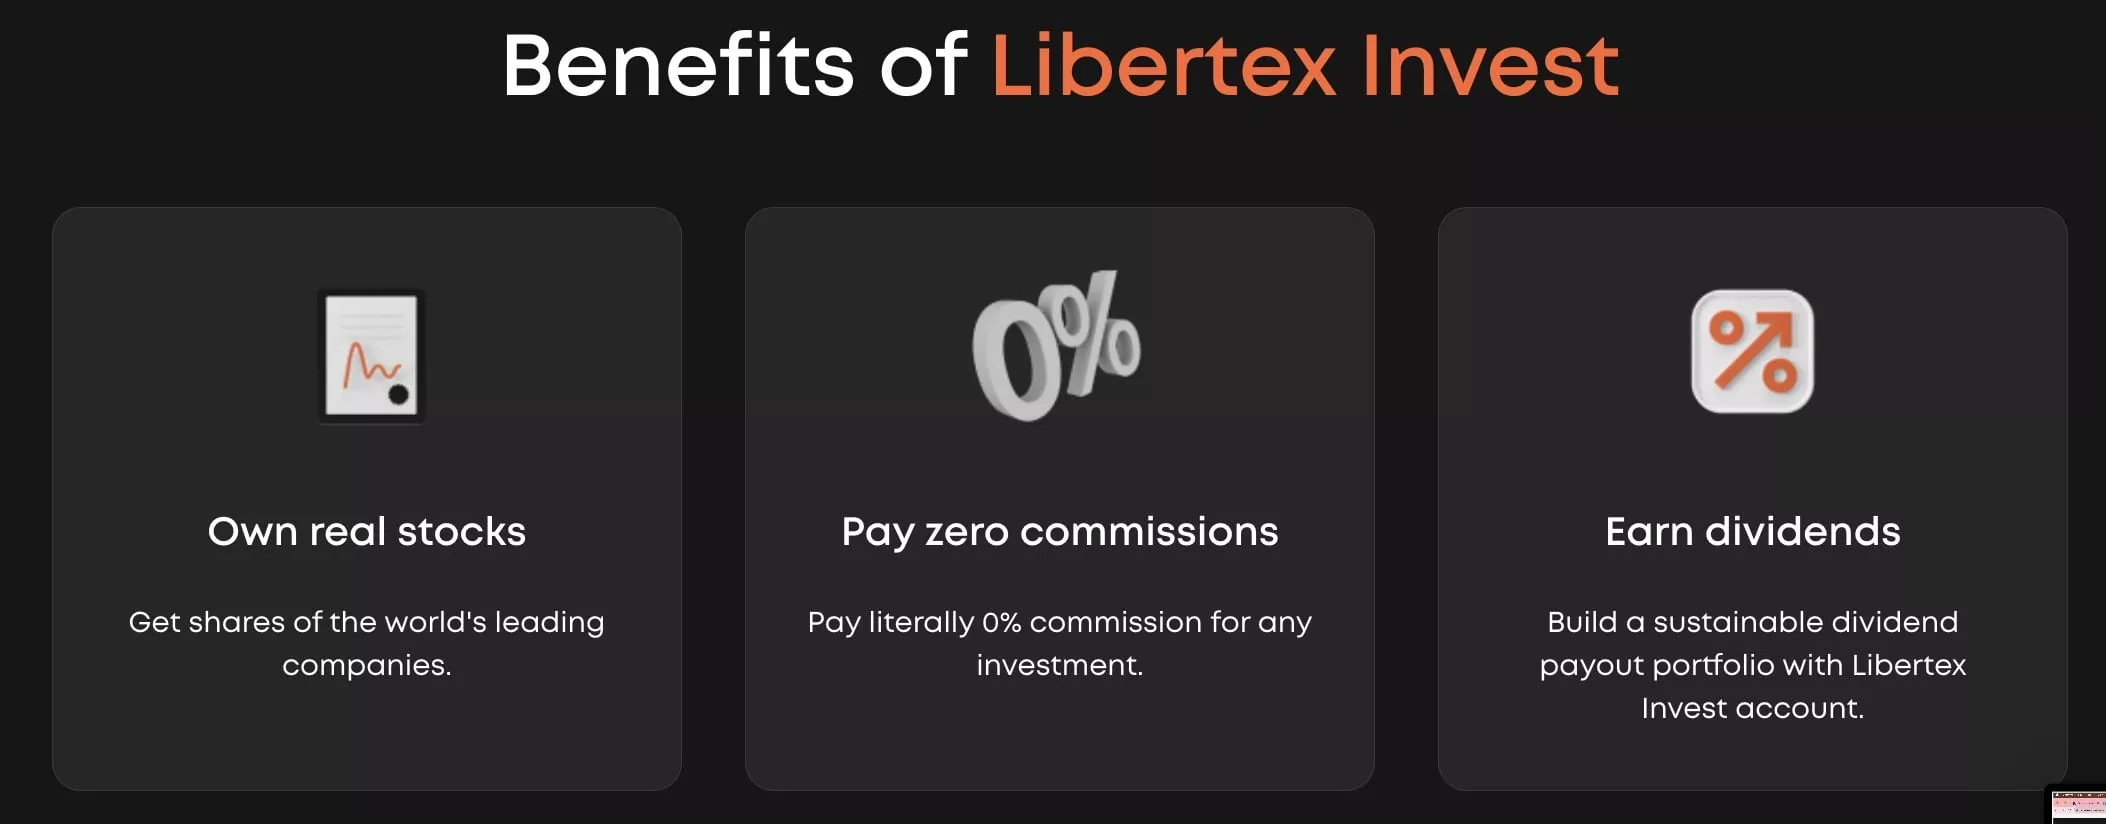 libertex benefits